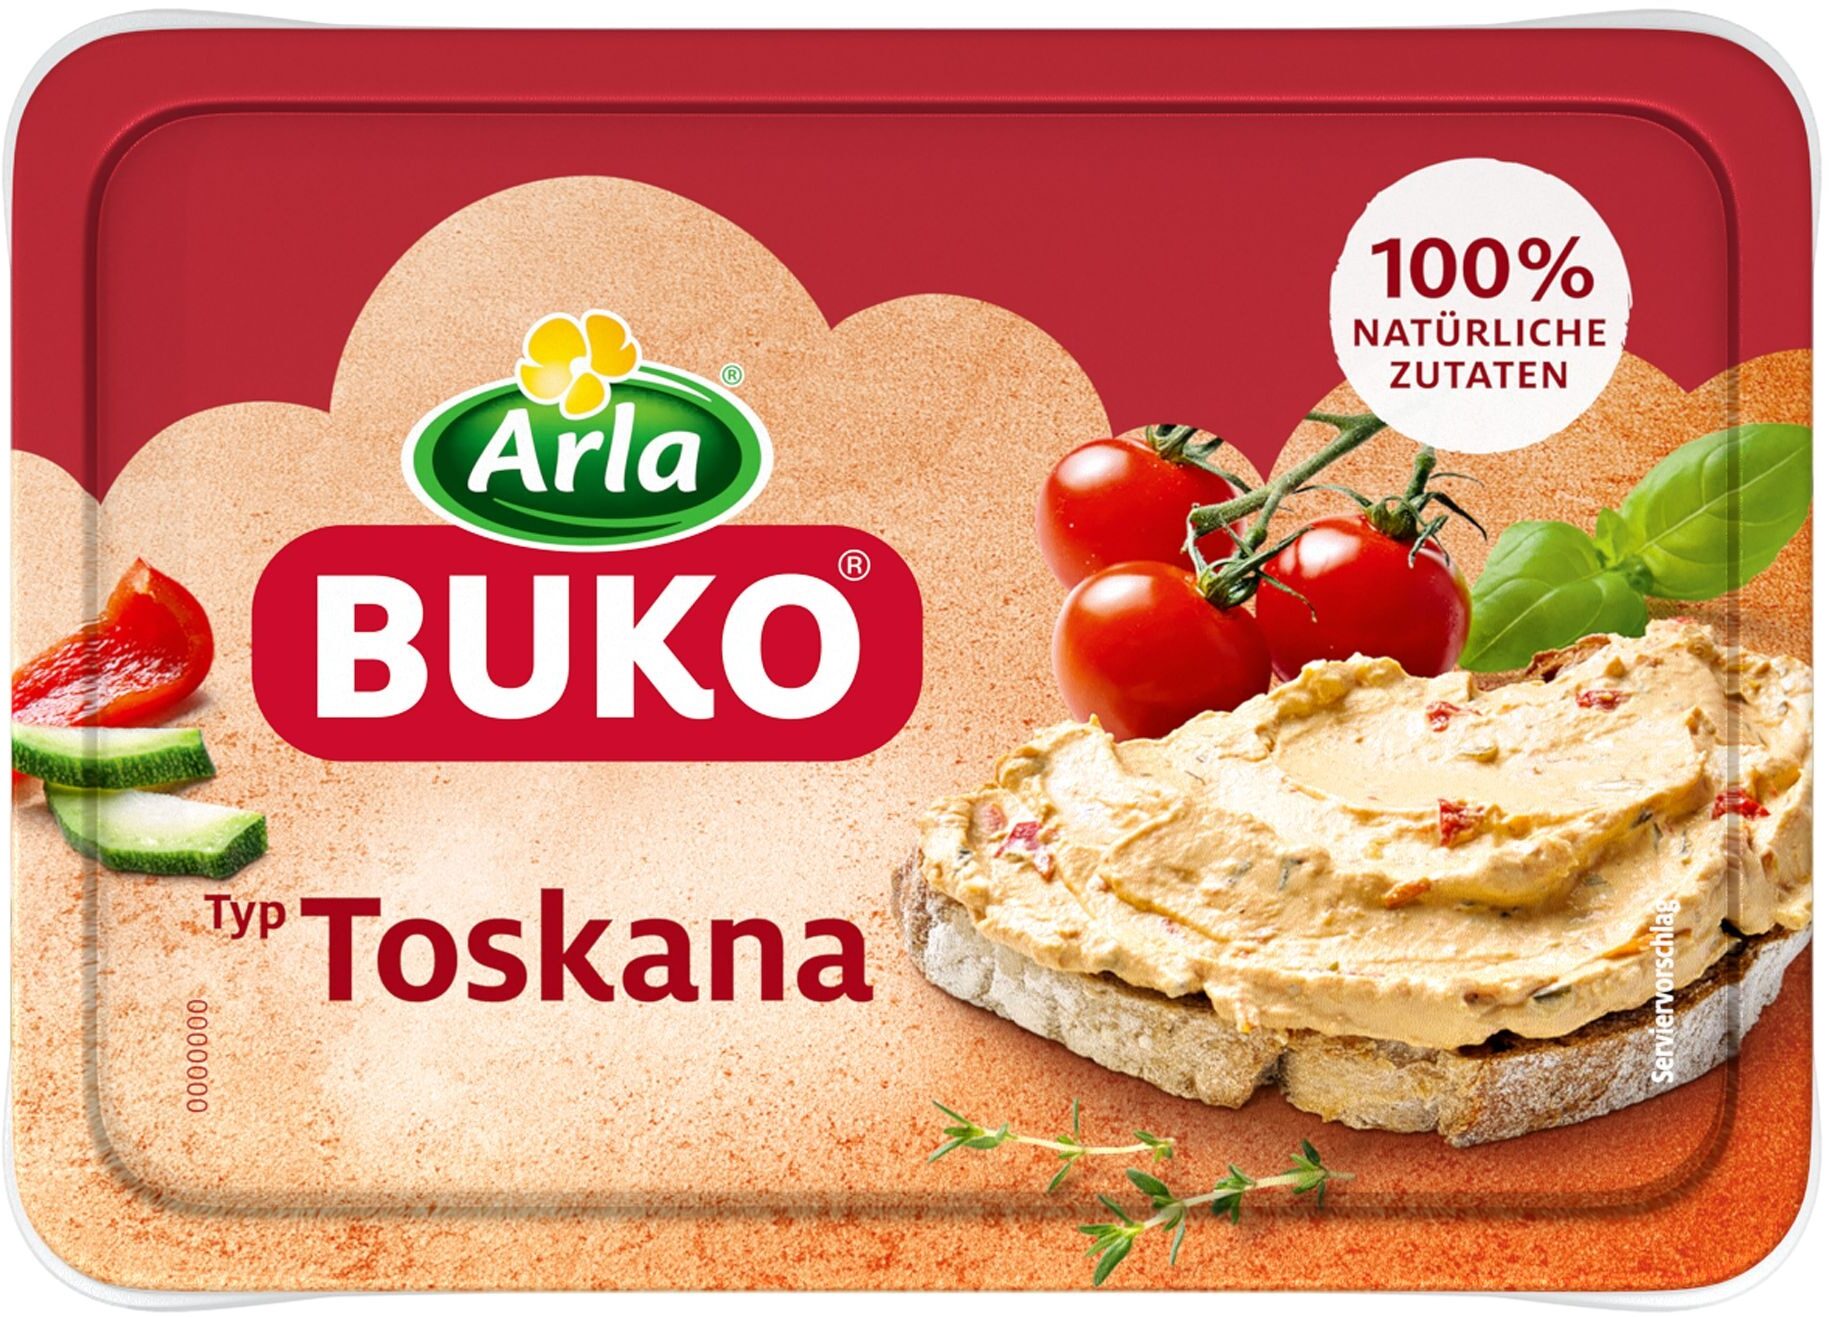 Arla Buko® Typ Toskana - Product - de